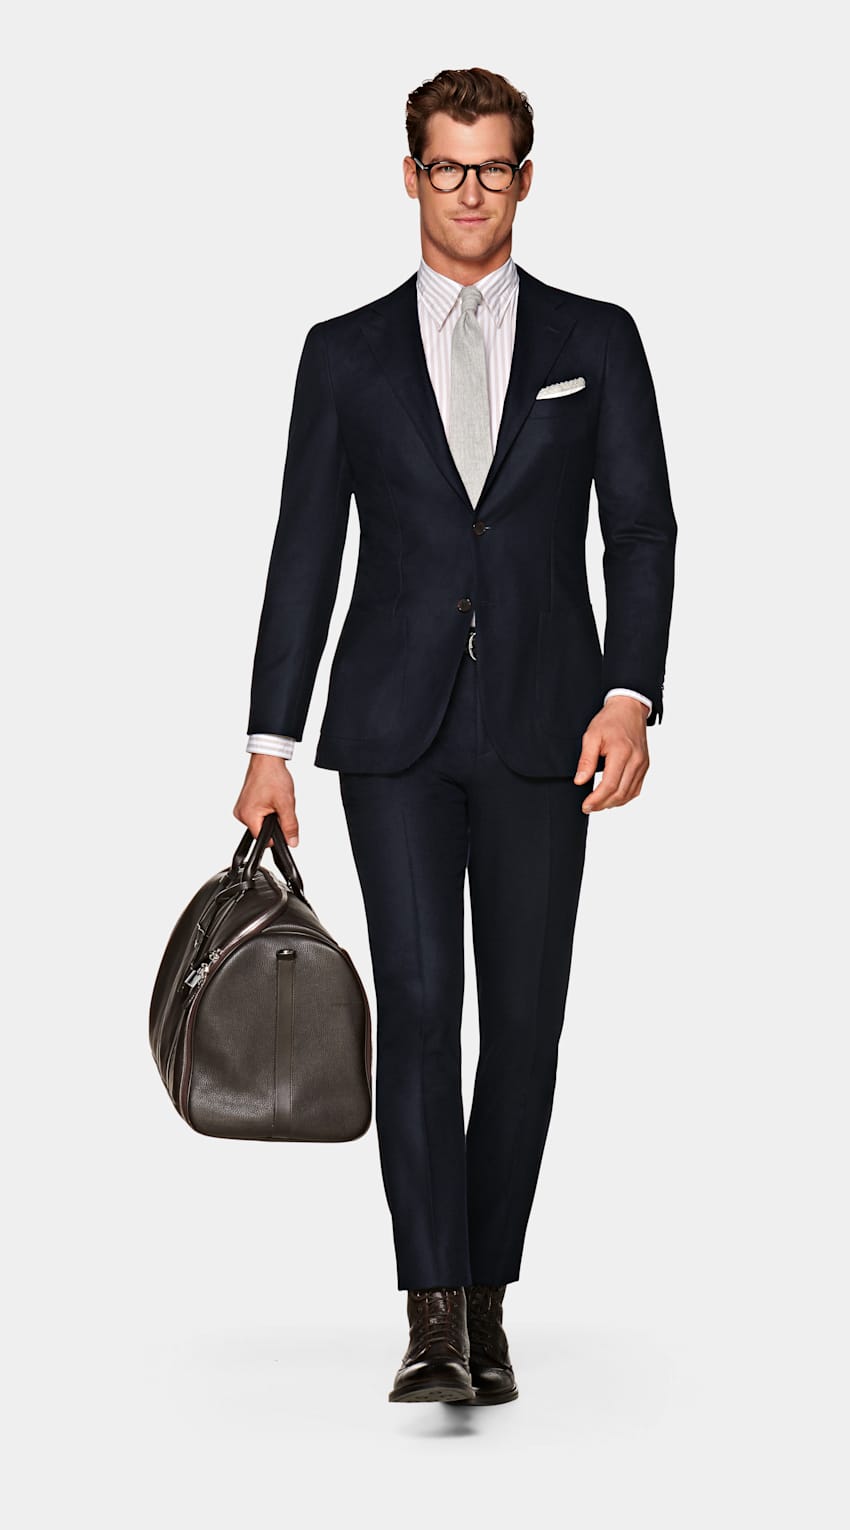 SUITSUPPLY 意大利 Vitale Barberis Canonico 生产的面料 Navy Havana Suit